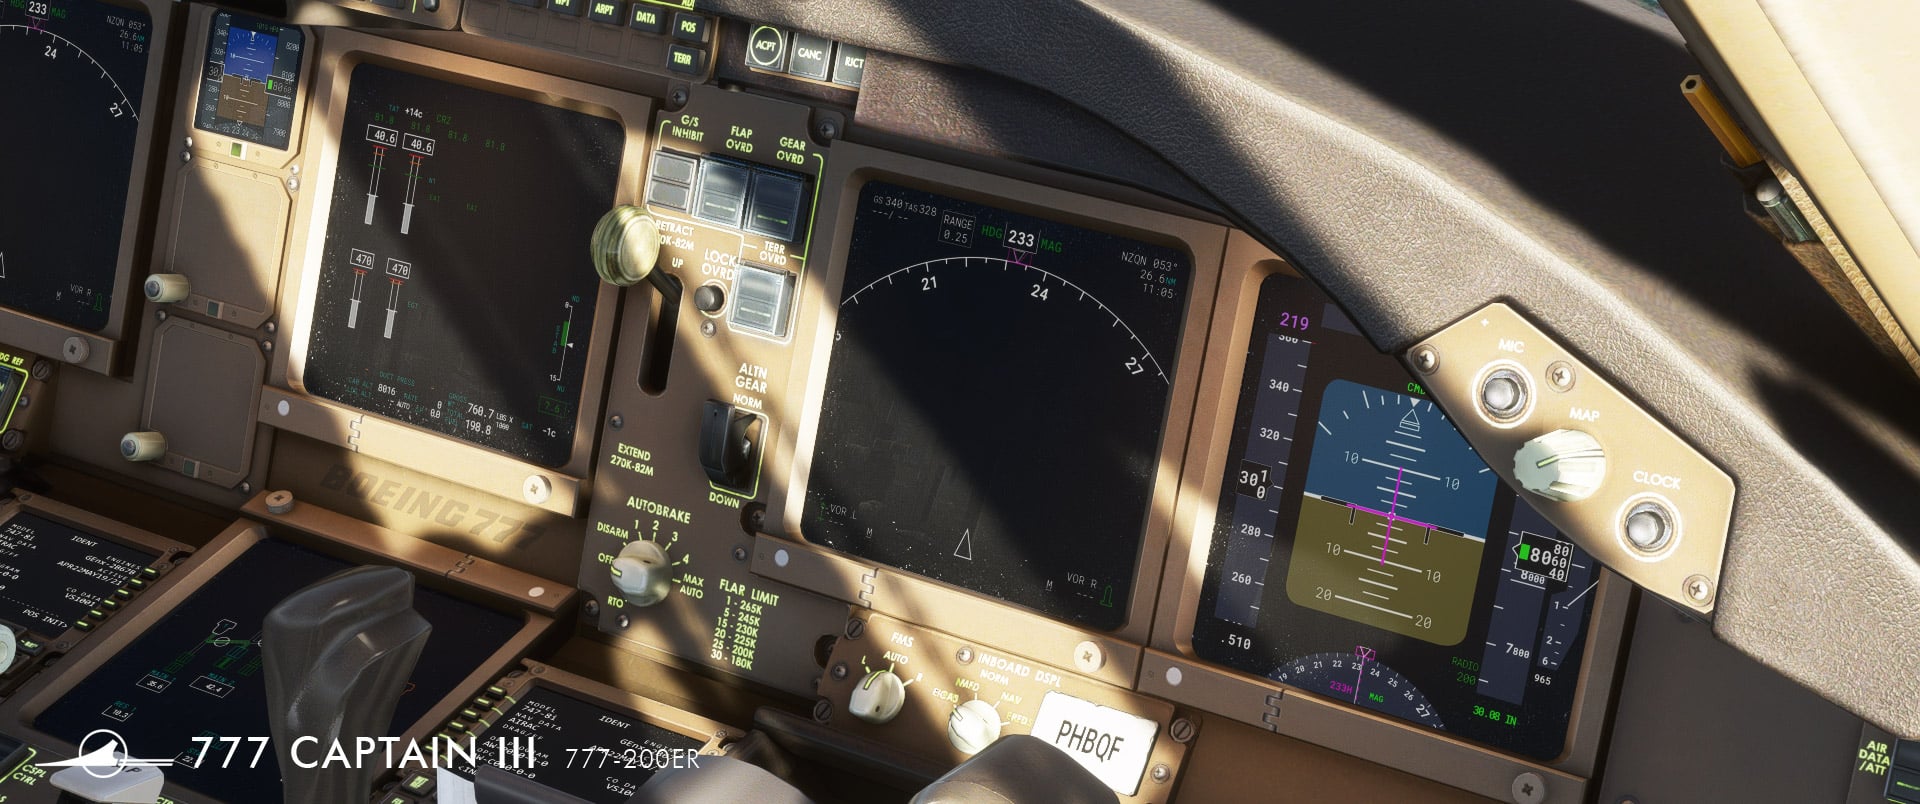 Boeing 777 Von Captain Sim Released Optisch Hui Systeme Ha